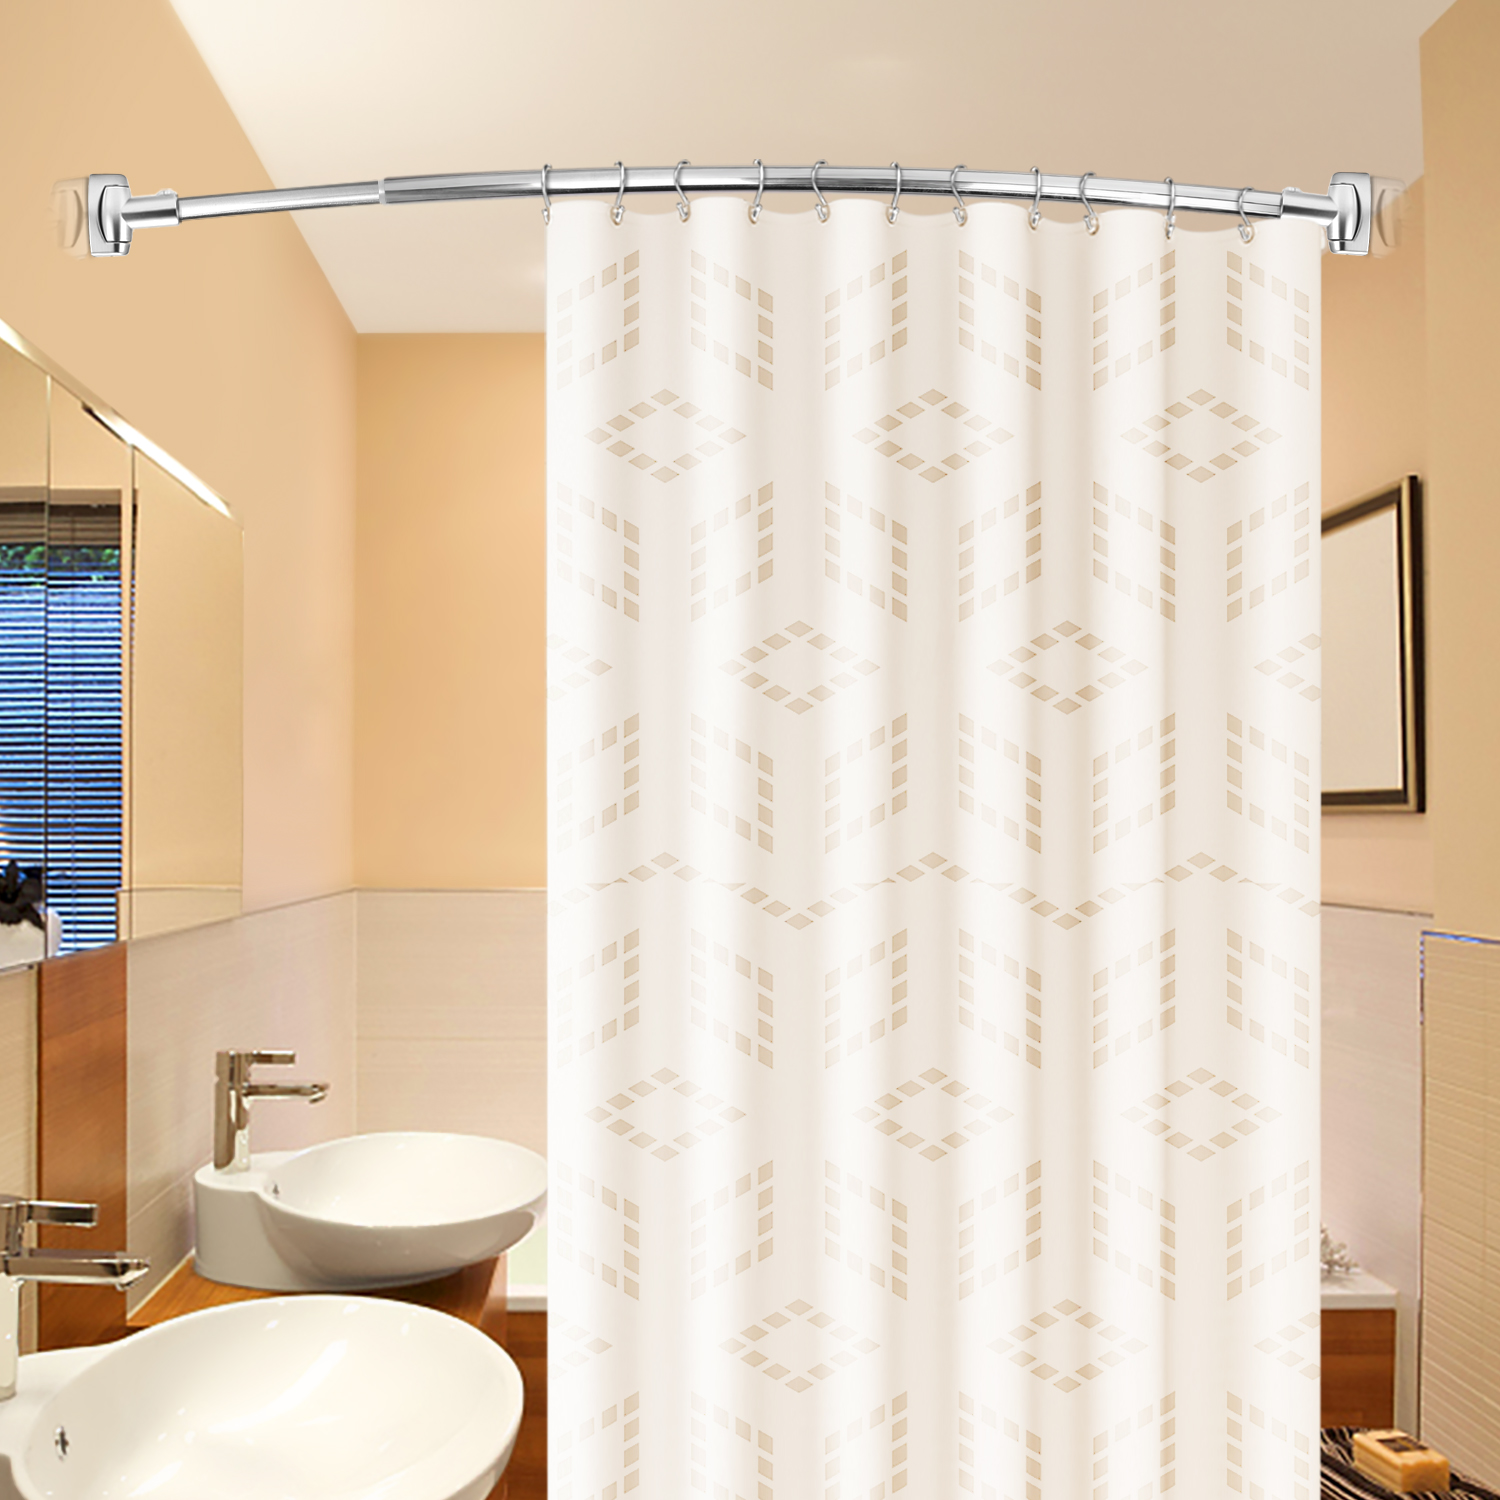 Exquisite verchromte, verstellbare, abgerundete, gebogene Edelstahl-Duschstangen, speziell für die Badewanne